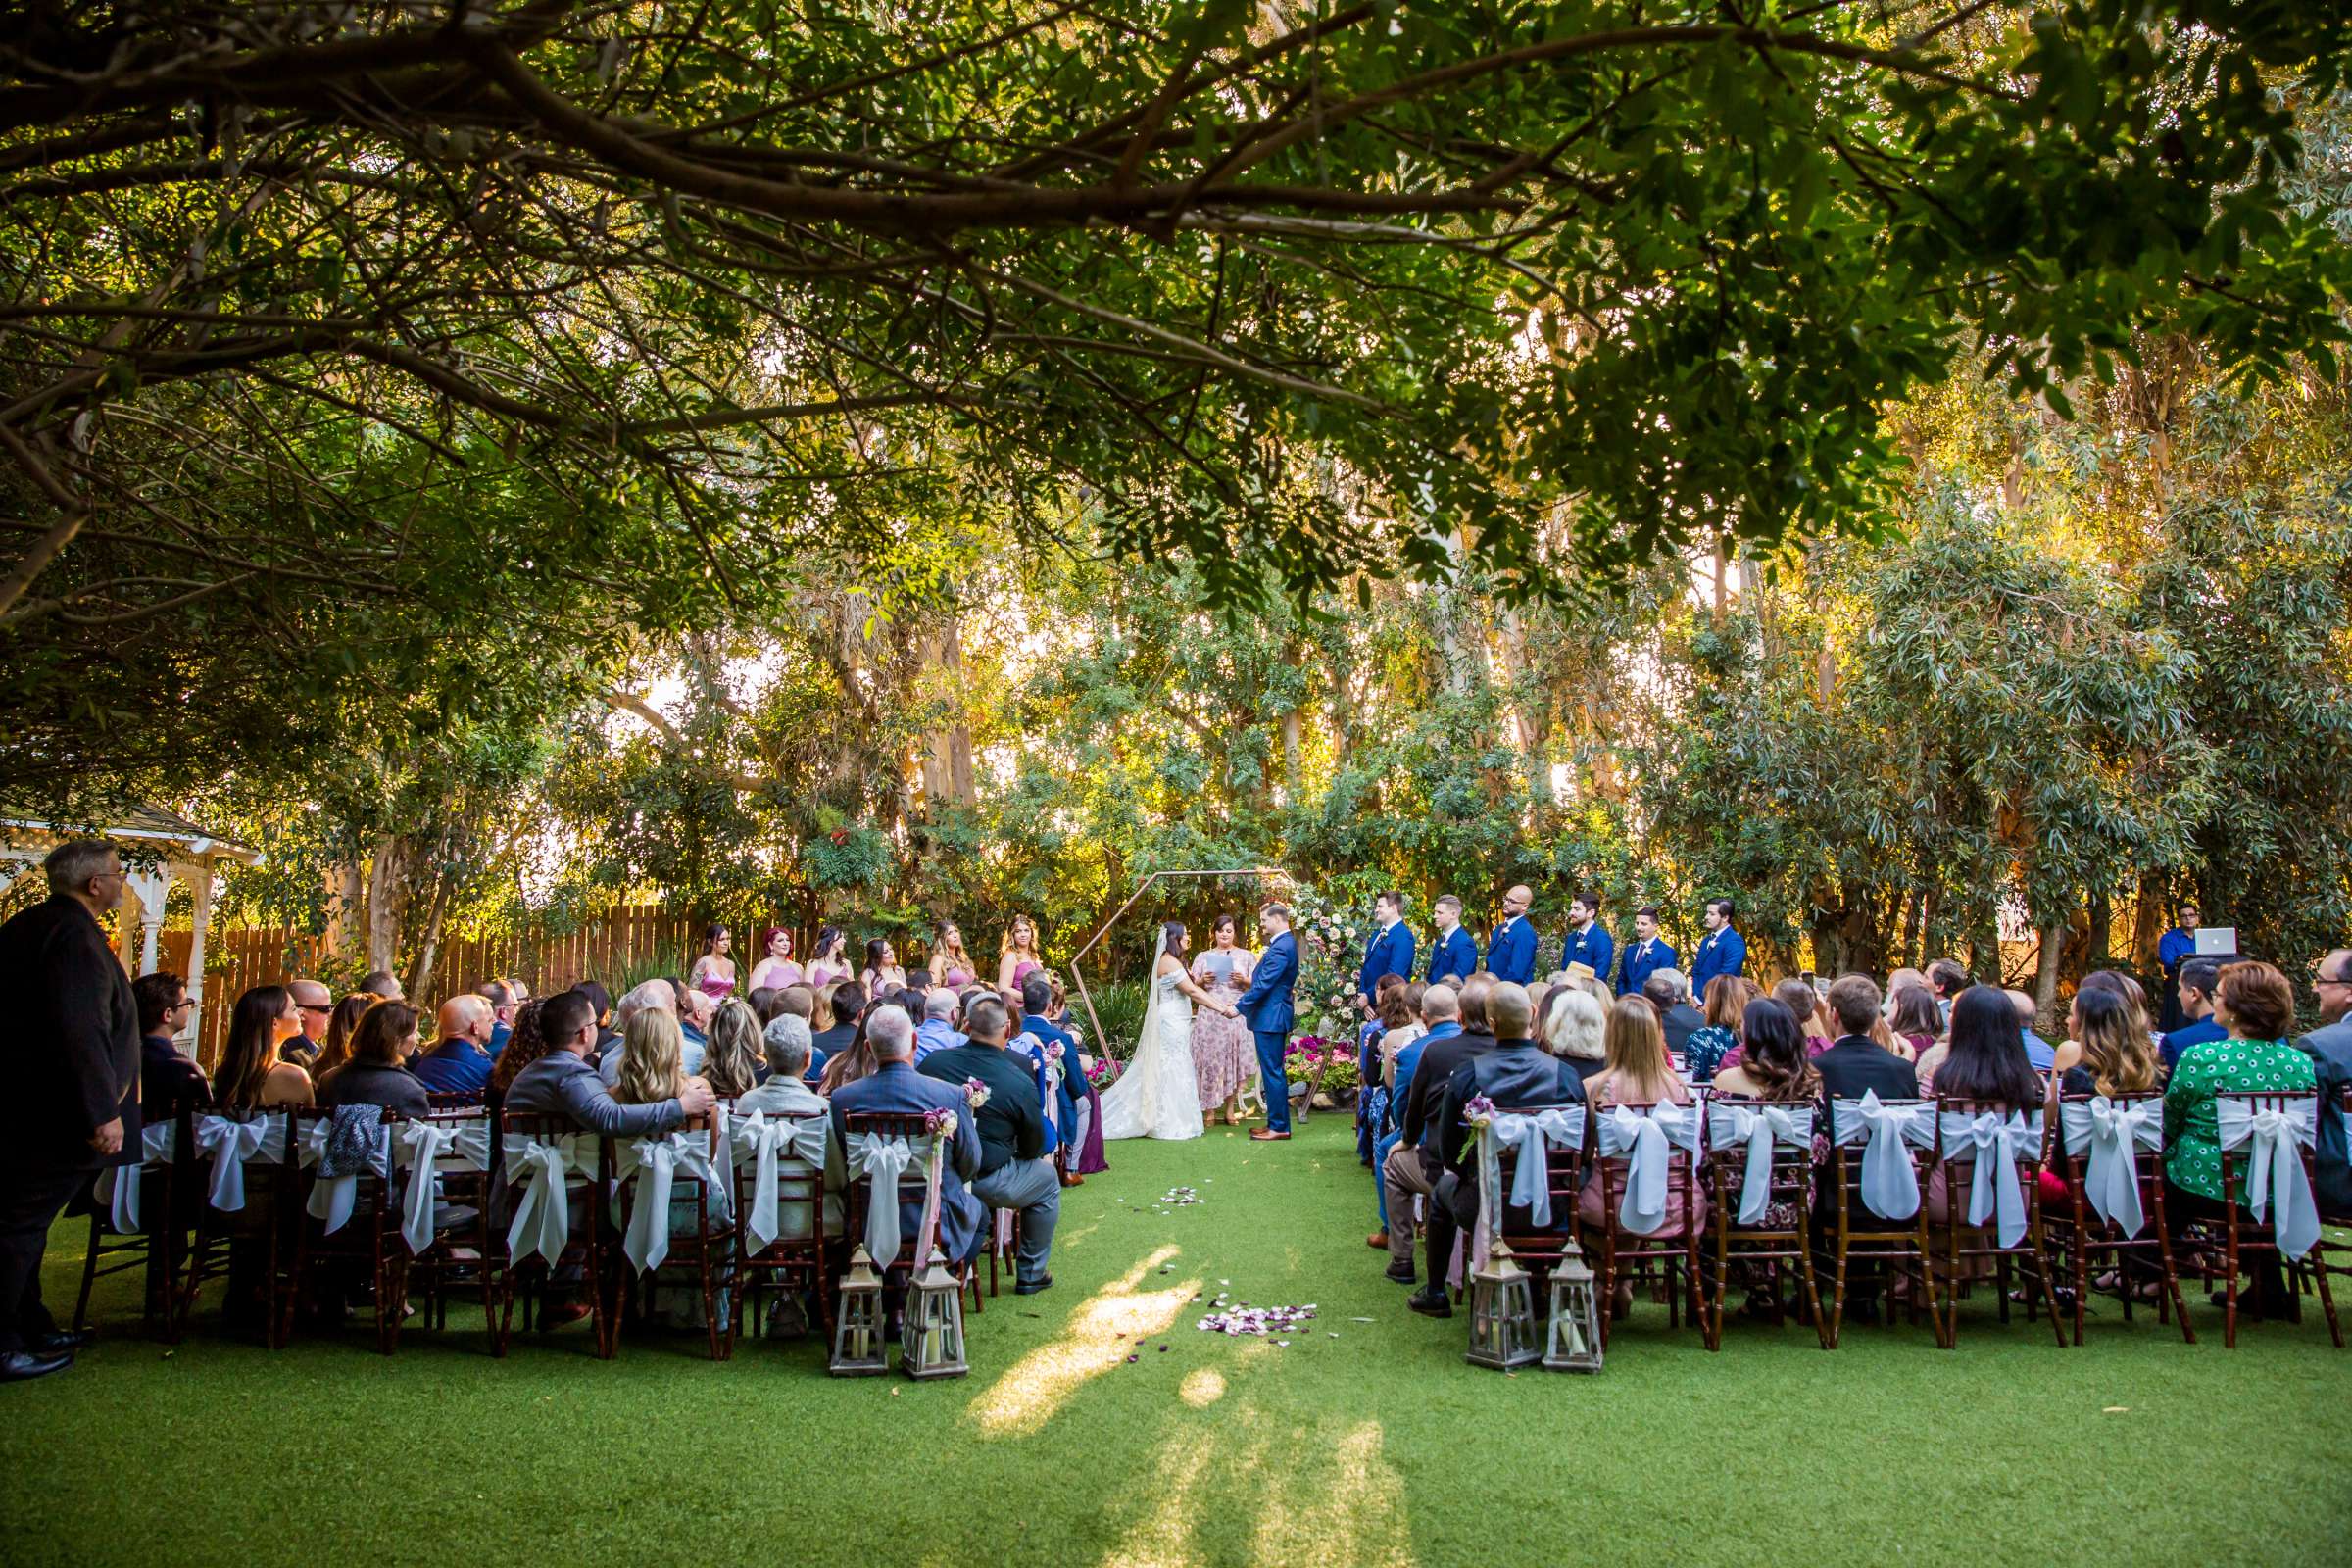 Twin Oaks House & Gardens Wedding Estate Wedding, Stephanie and Ilija Wedding Photo #67 by True Photography